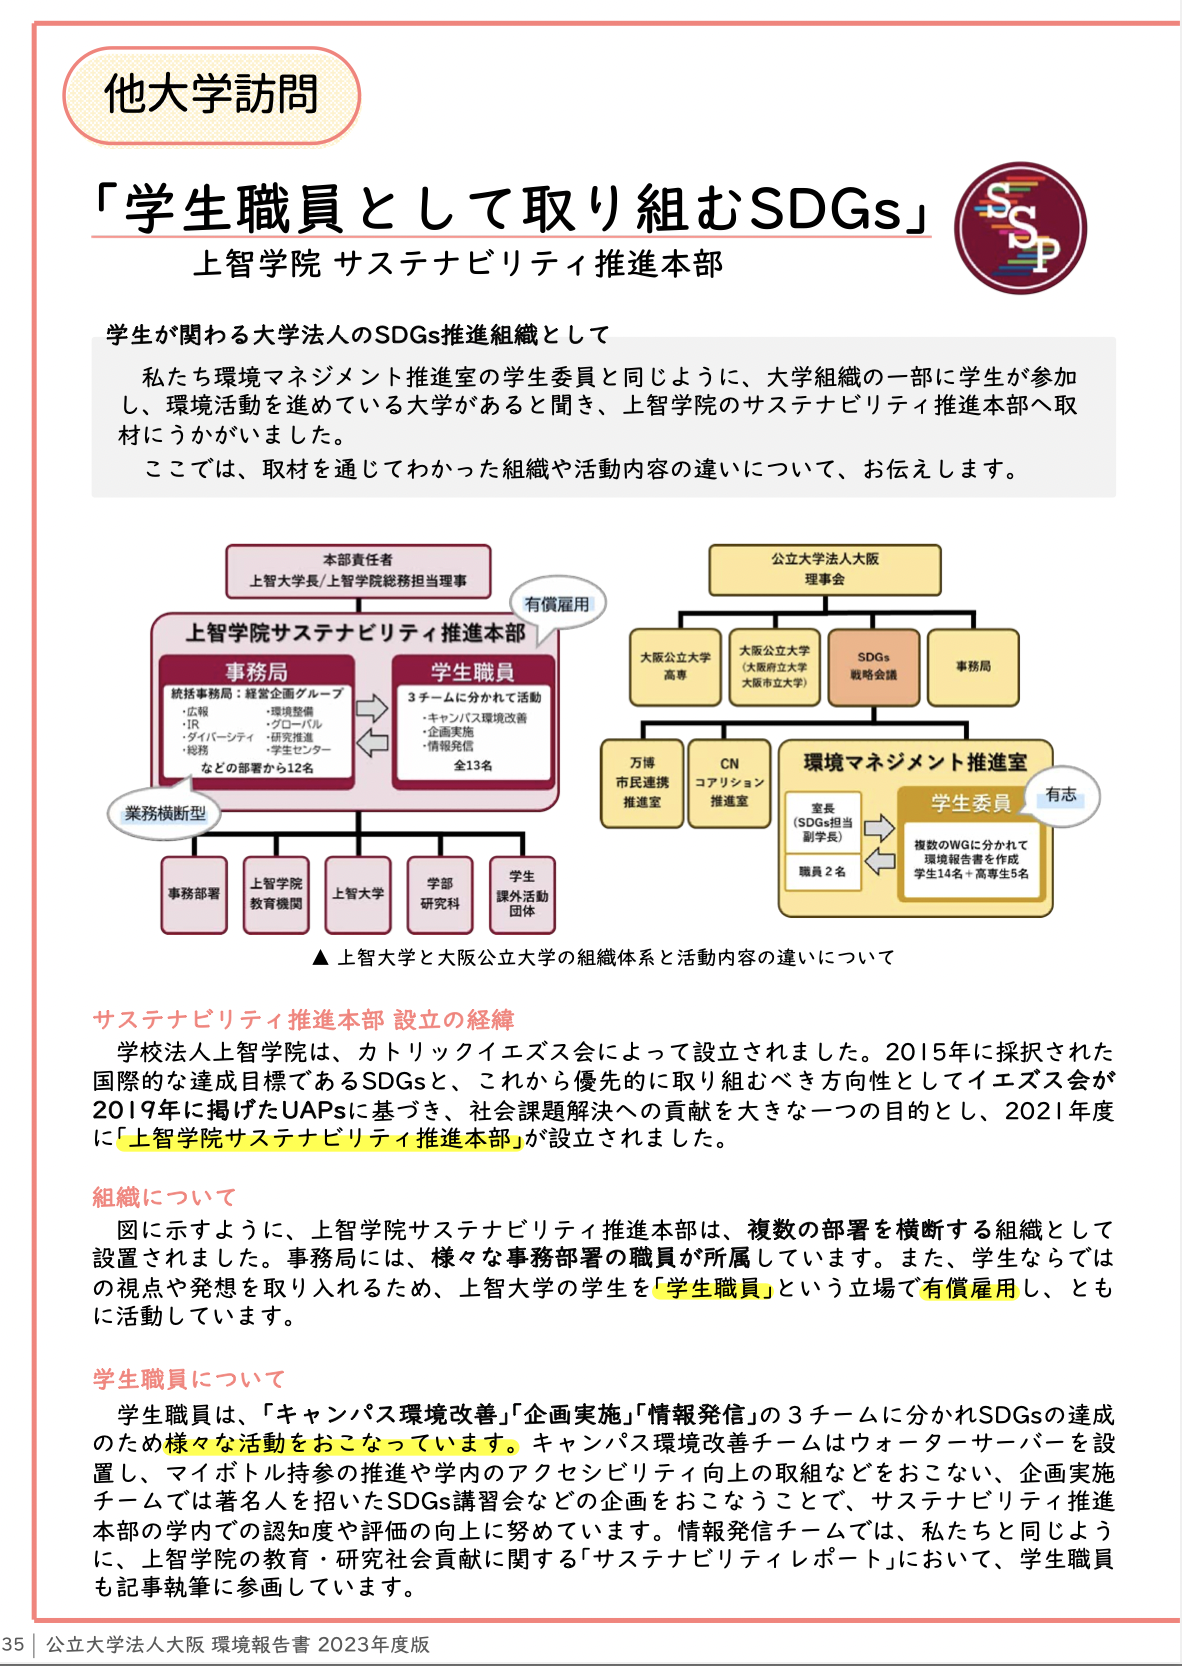 公立大学法人大阪 環境報告書にて本学の活動が紹介されました